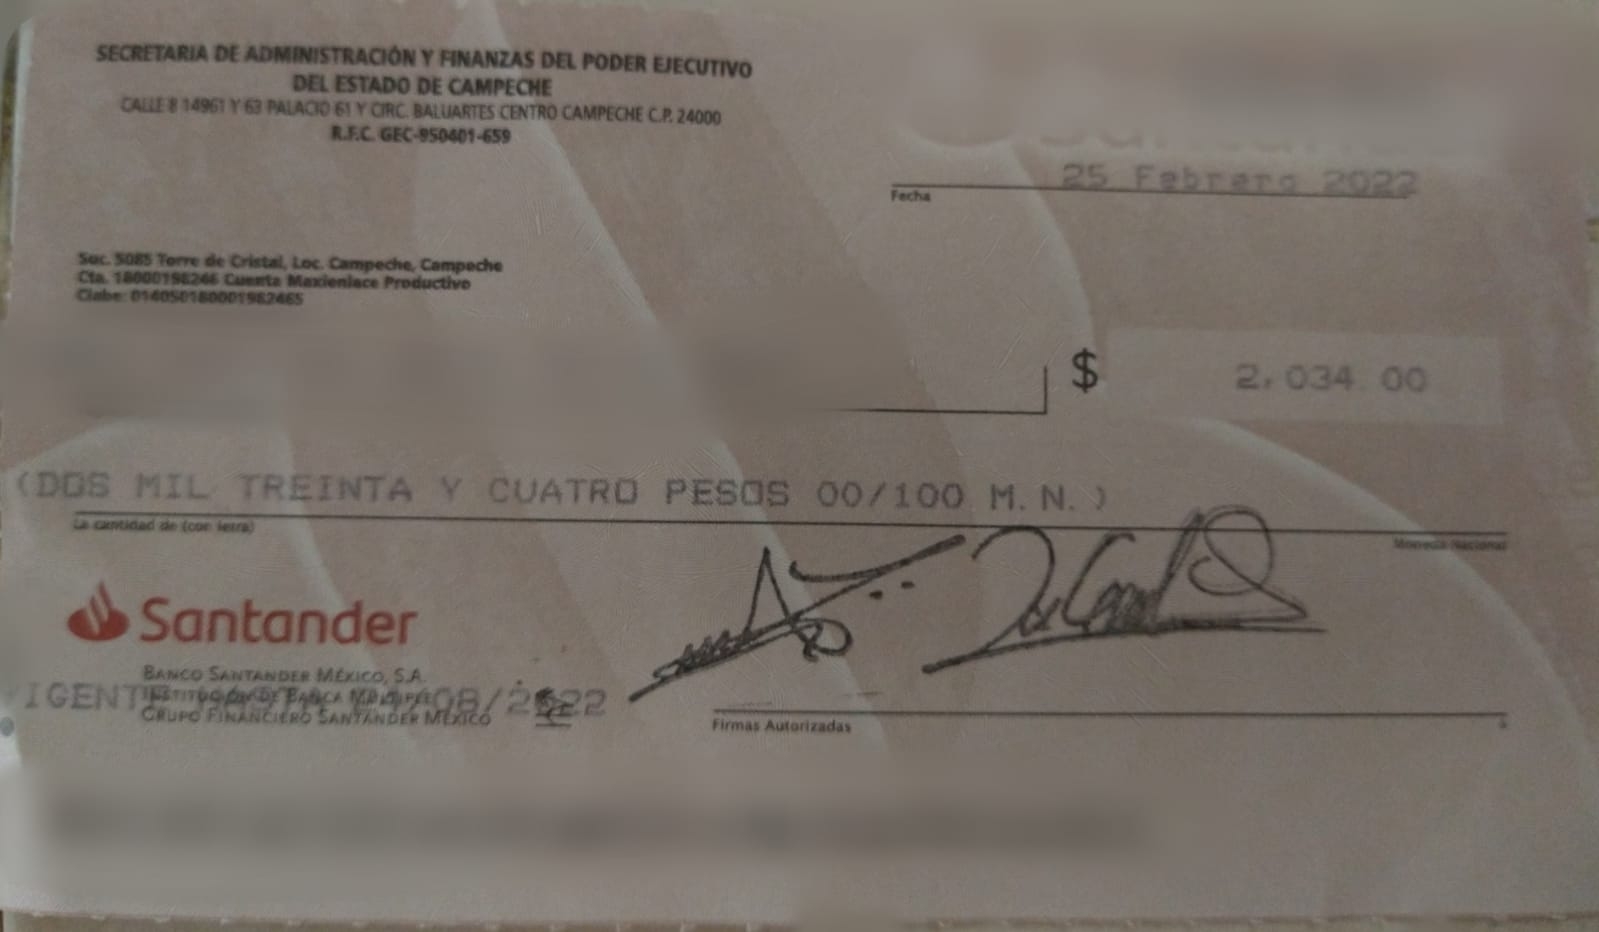 En un documento hecho llegar en exclusiva a esta casa editorial, se muestra la fotografía del cheque que les están entregando a los elementos ministeriales como parte del “incremento salarial”